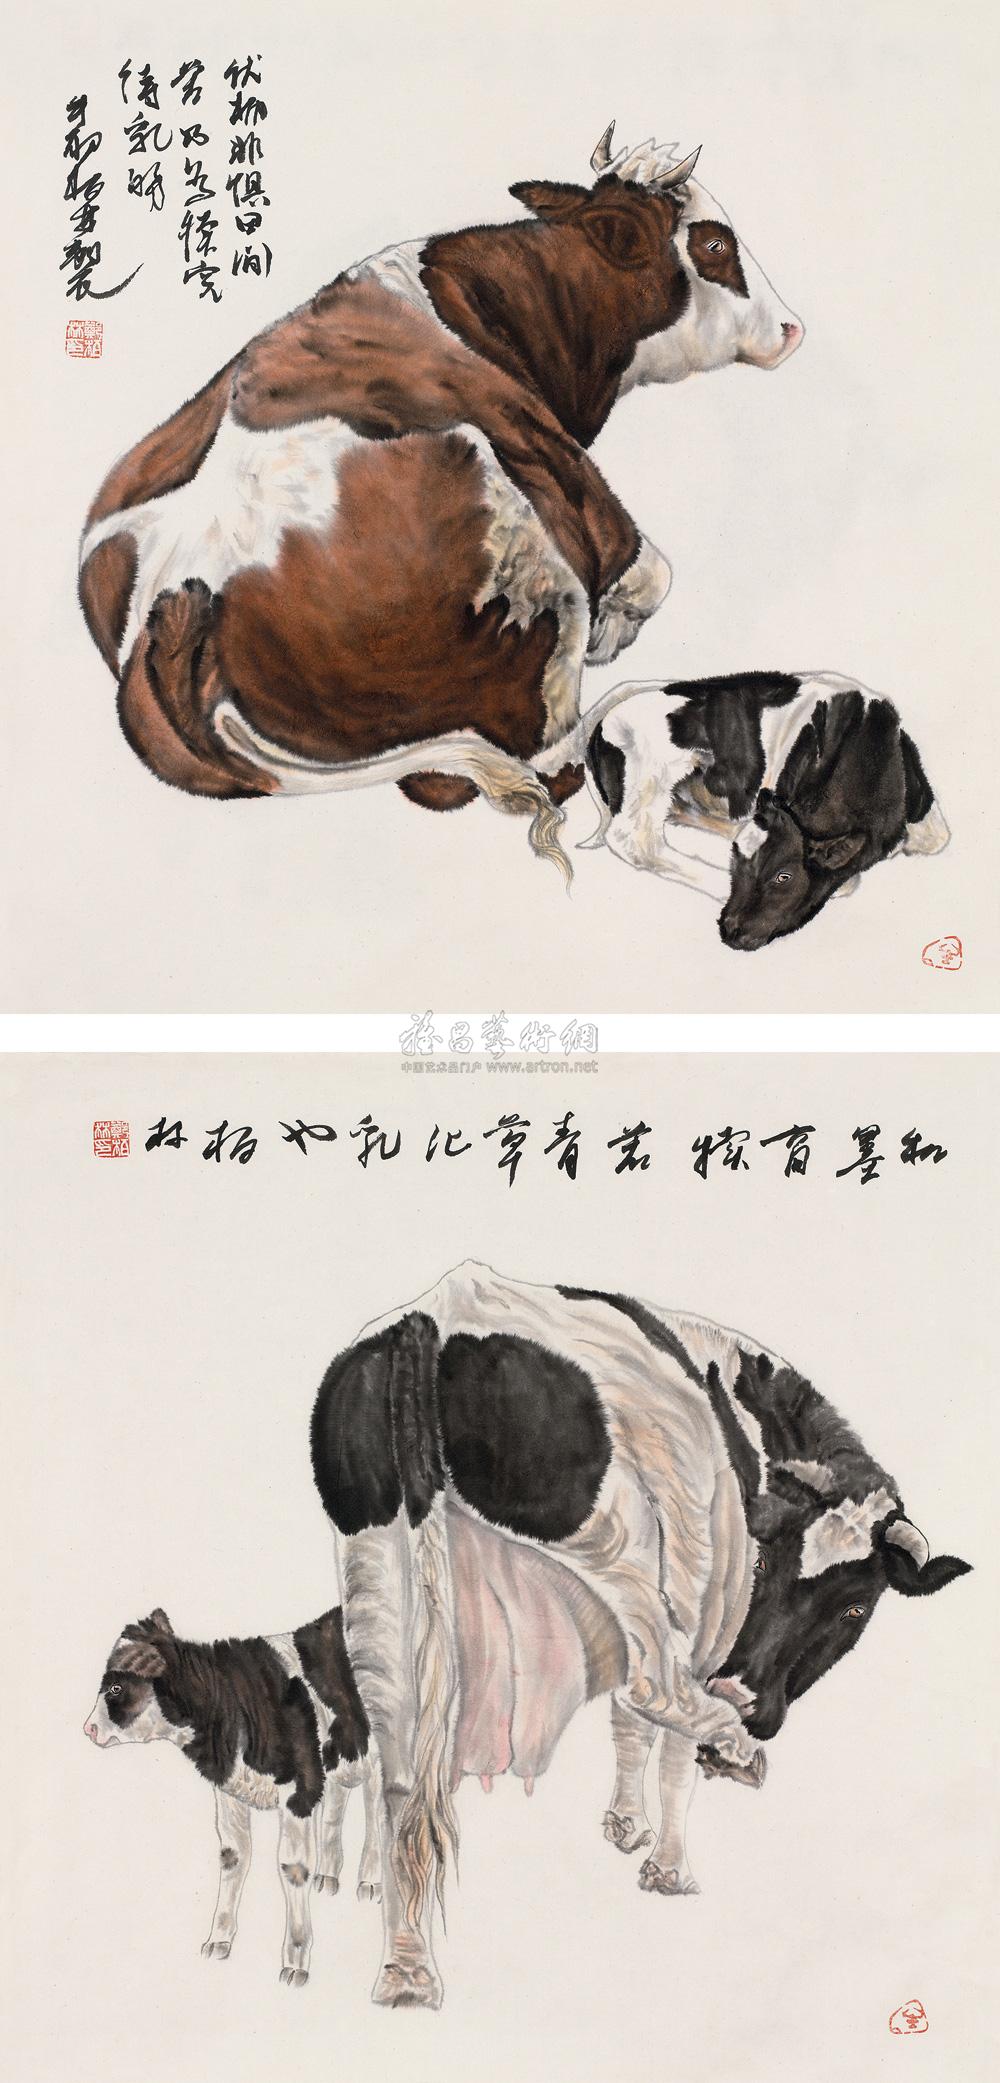 陶弘景的二牛图图片